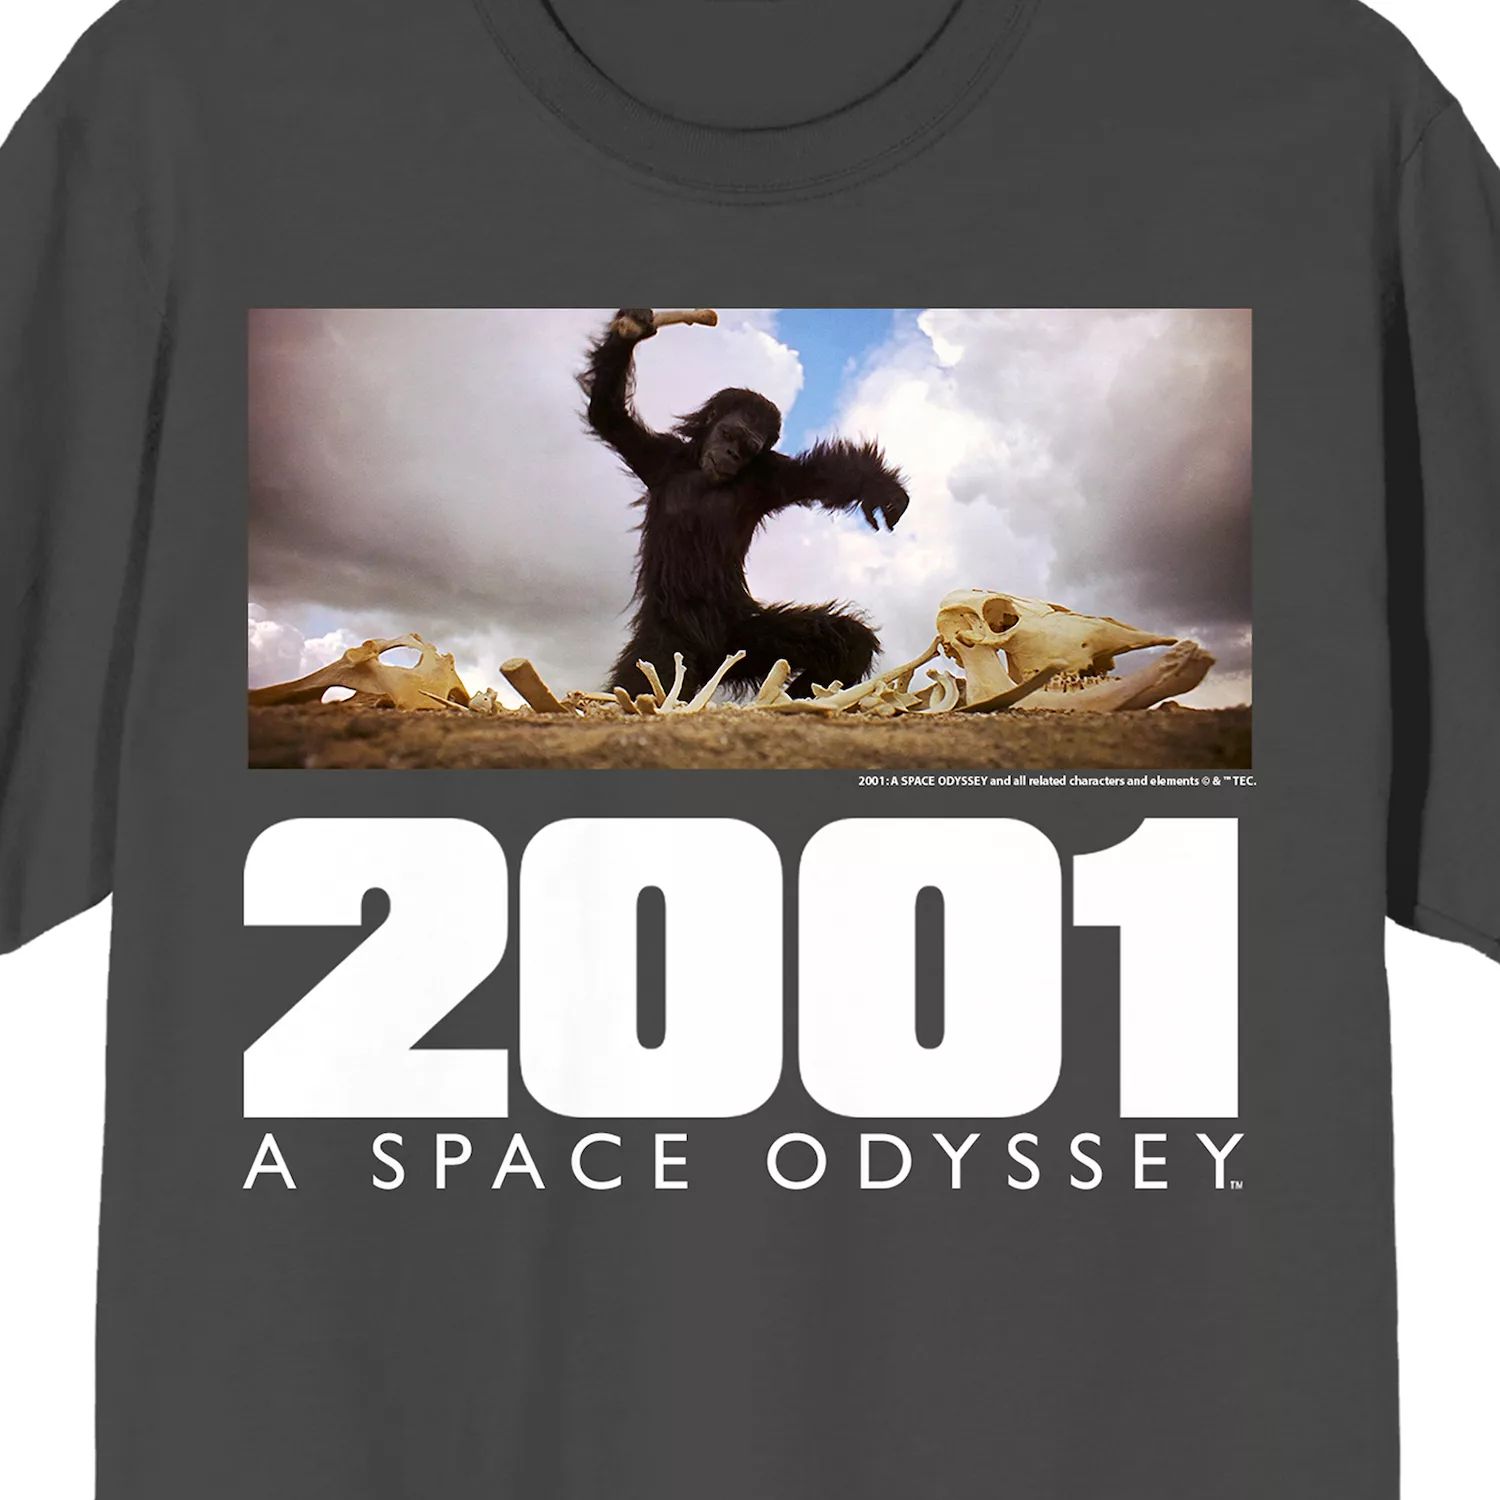 Мужская футболка с рекламным рисунком «Космическая одиссея 2001» Licensed Character